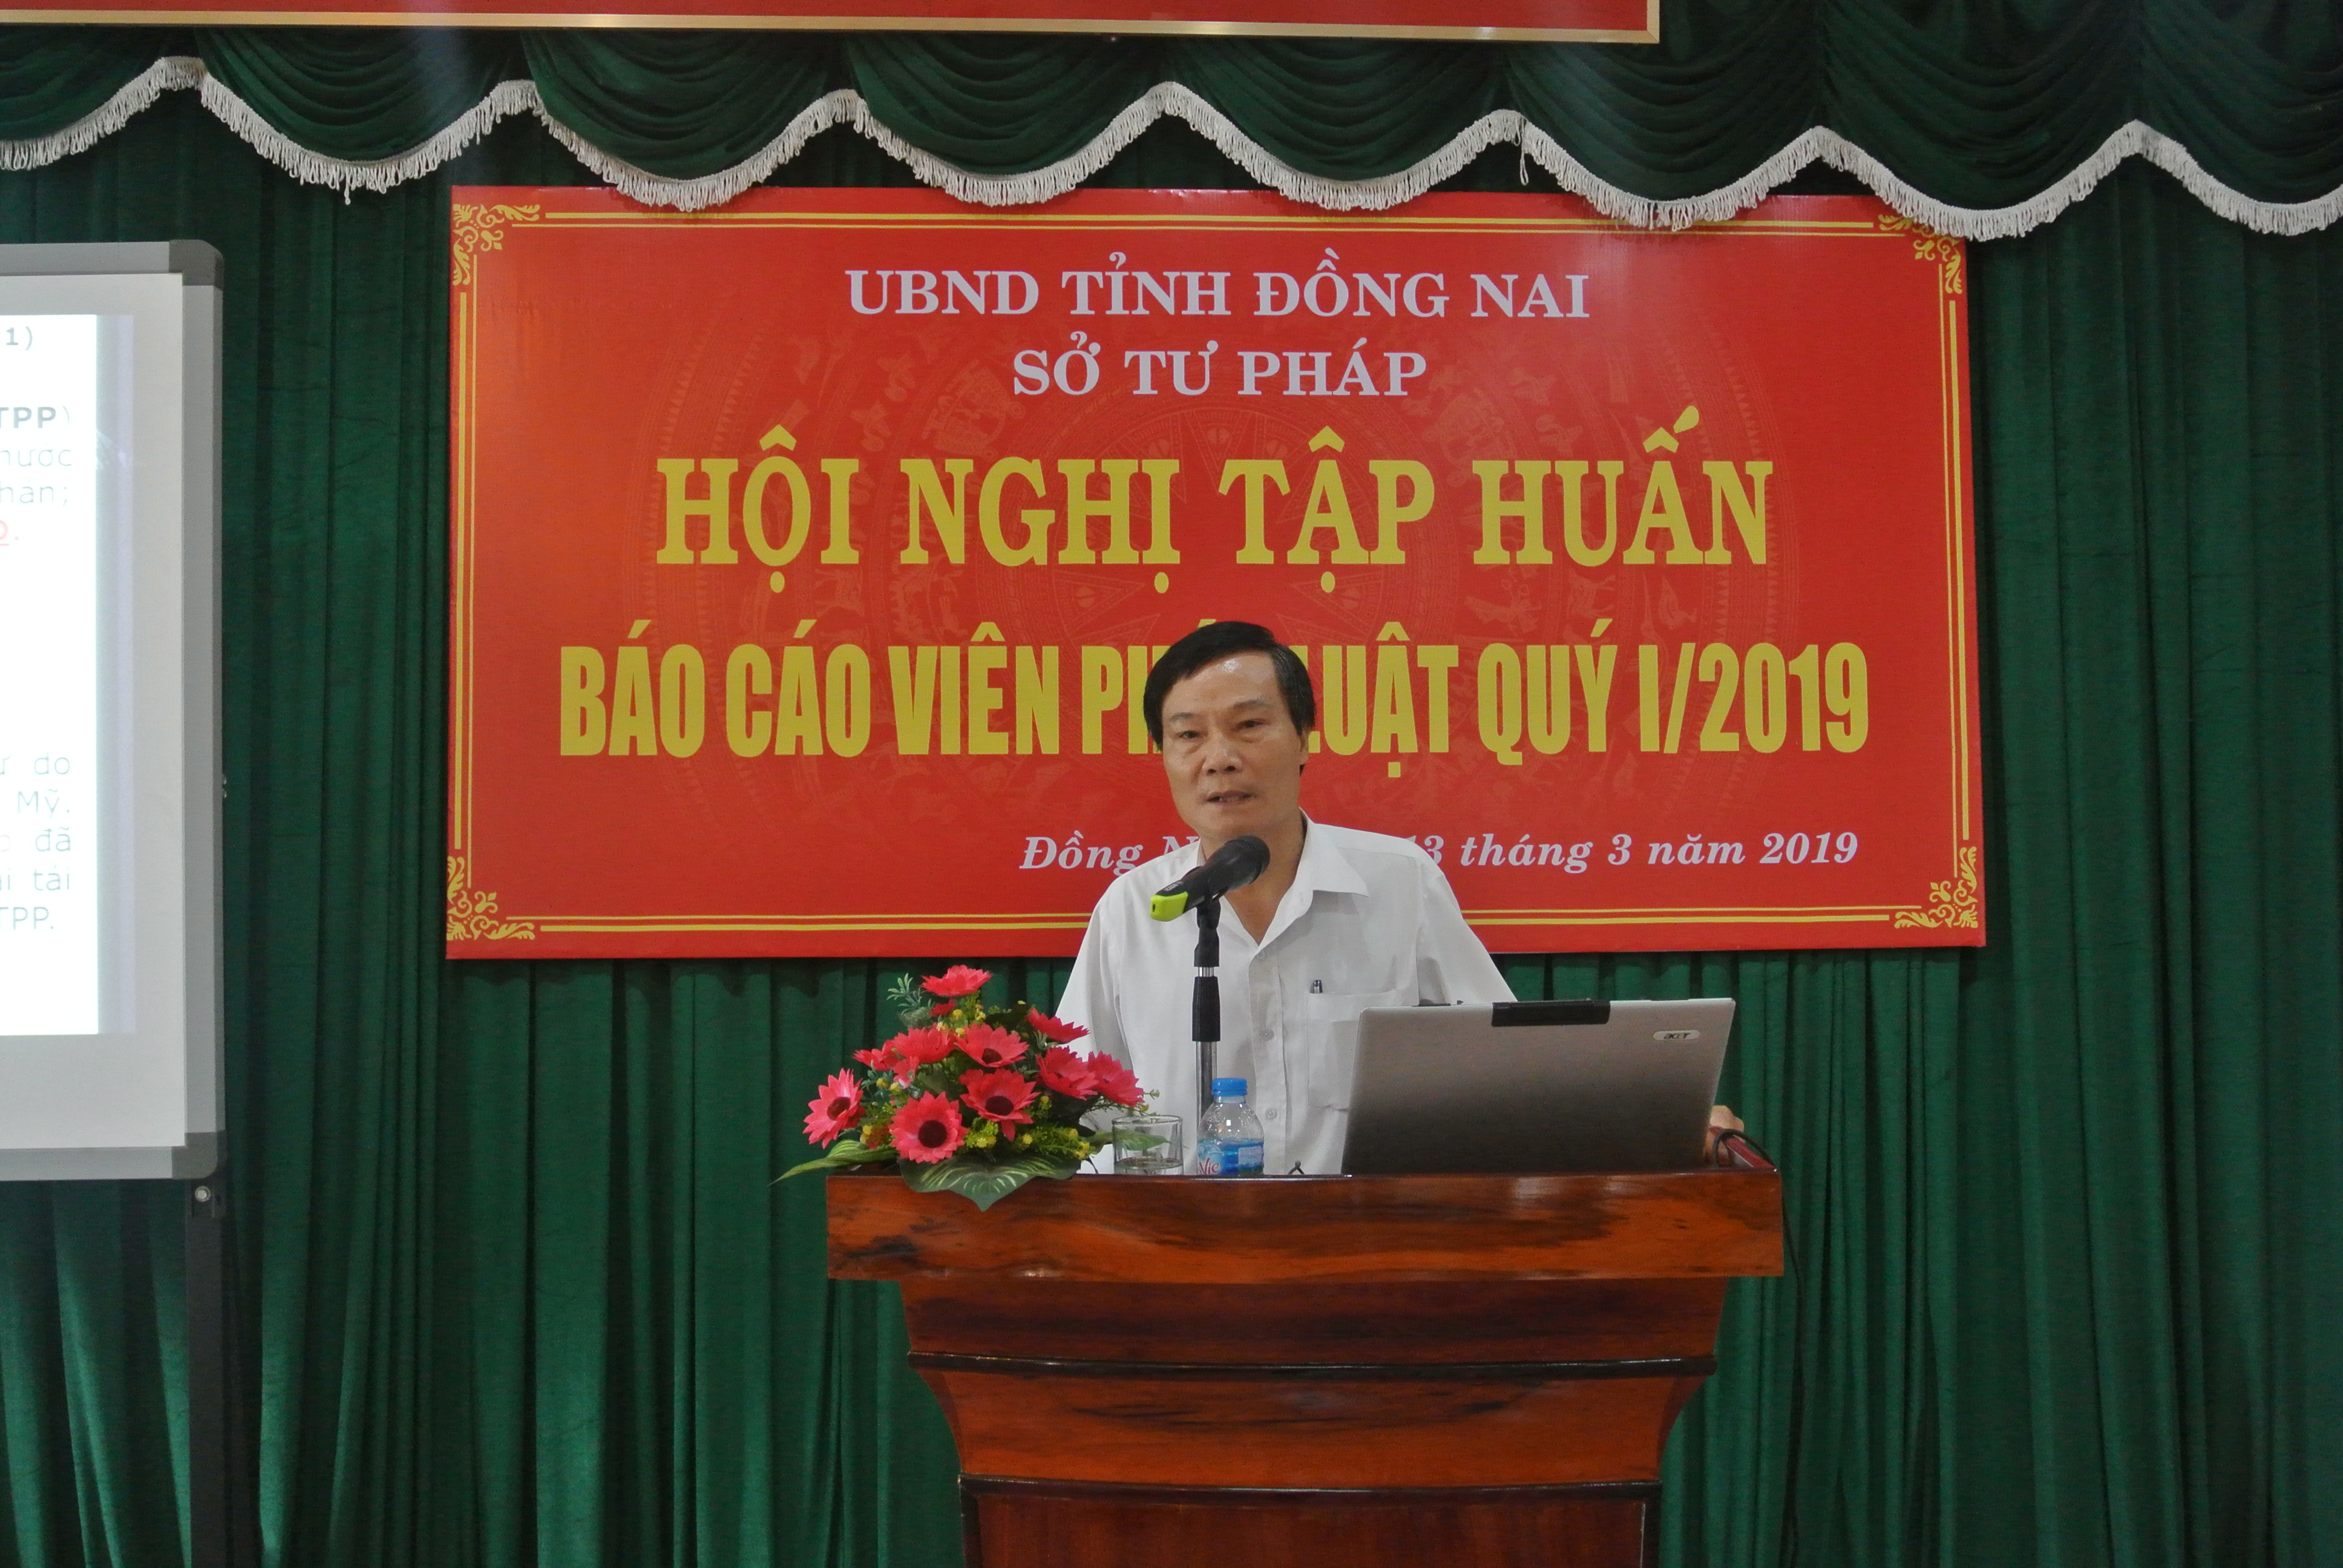 Hoi nghi Bao cao vien PL 1-2019 - Nguyen Dang Hoai.JPG